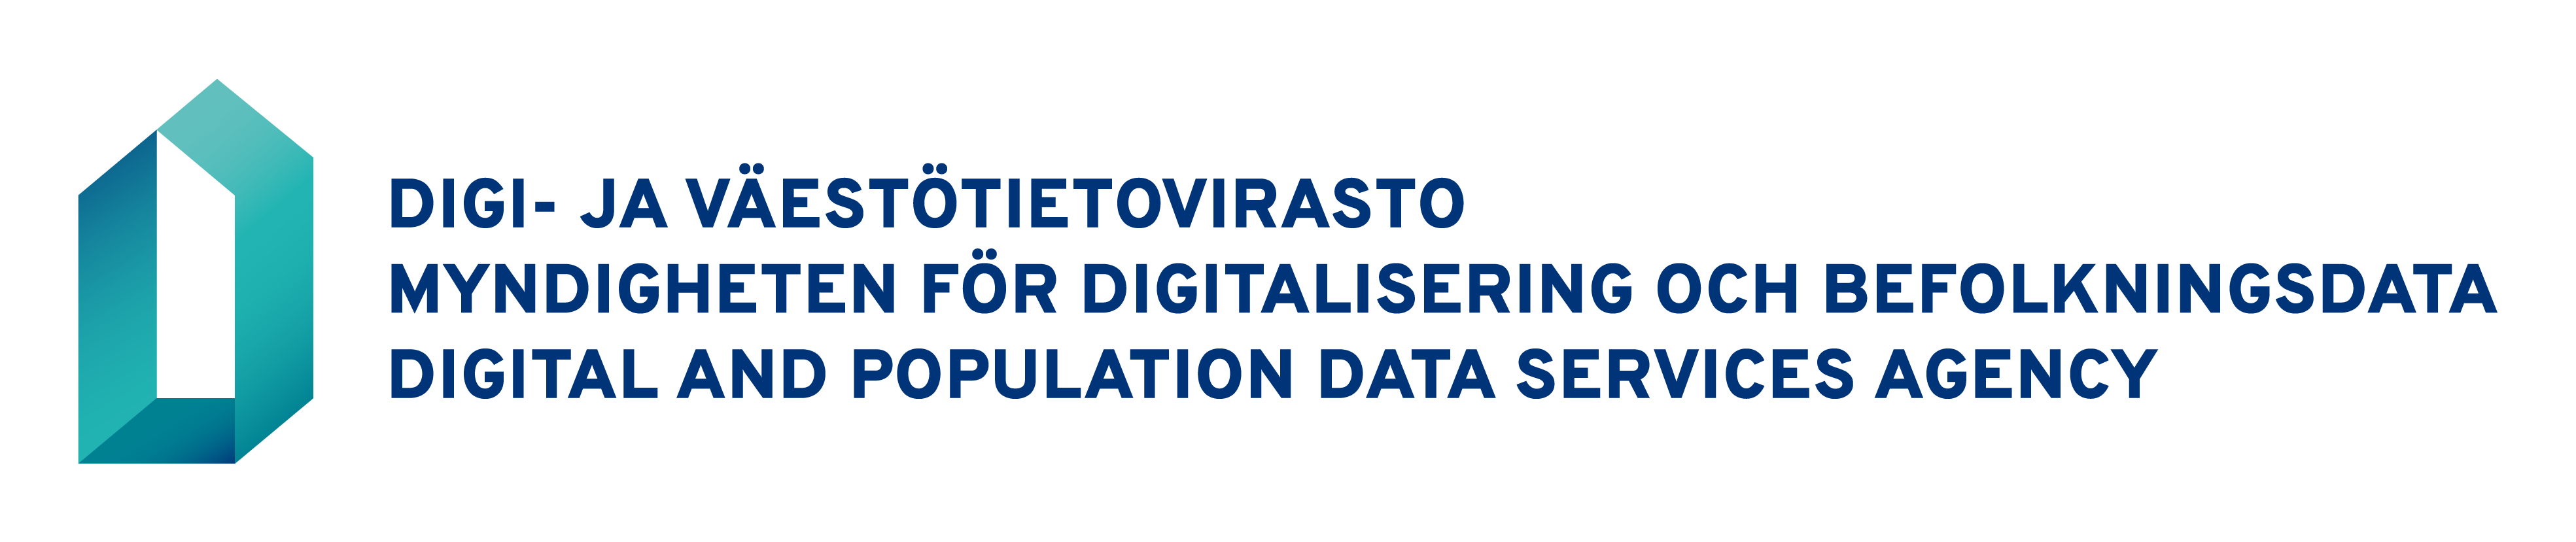 Logotyp: Myndigheten för digitalisering och befolkningsdata. Trespråkig logotyp: finska-svenska-engelska